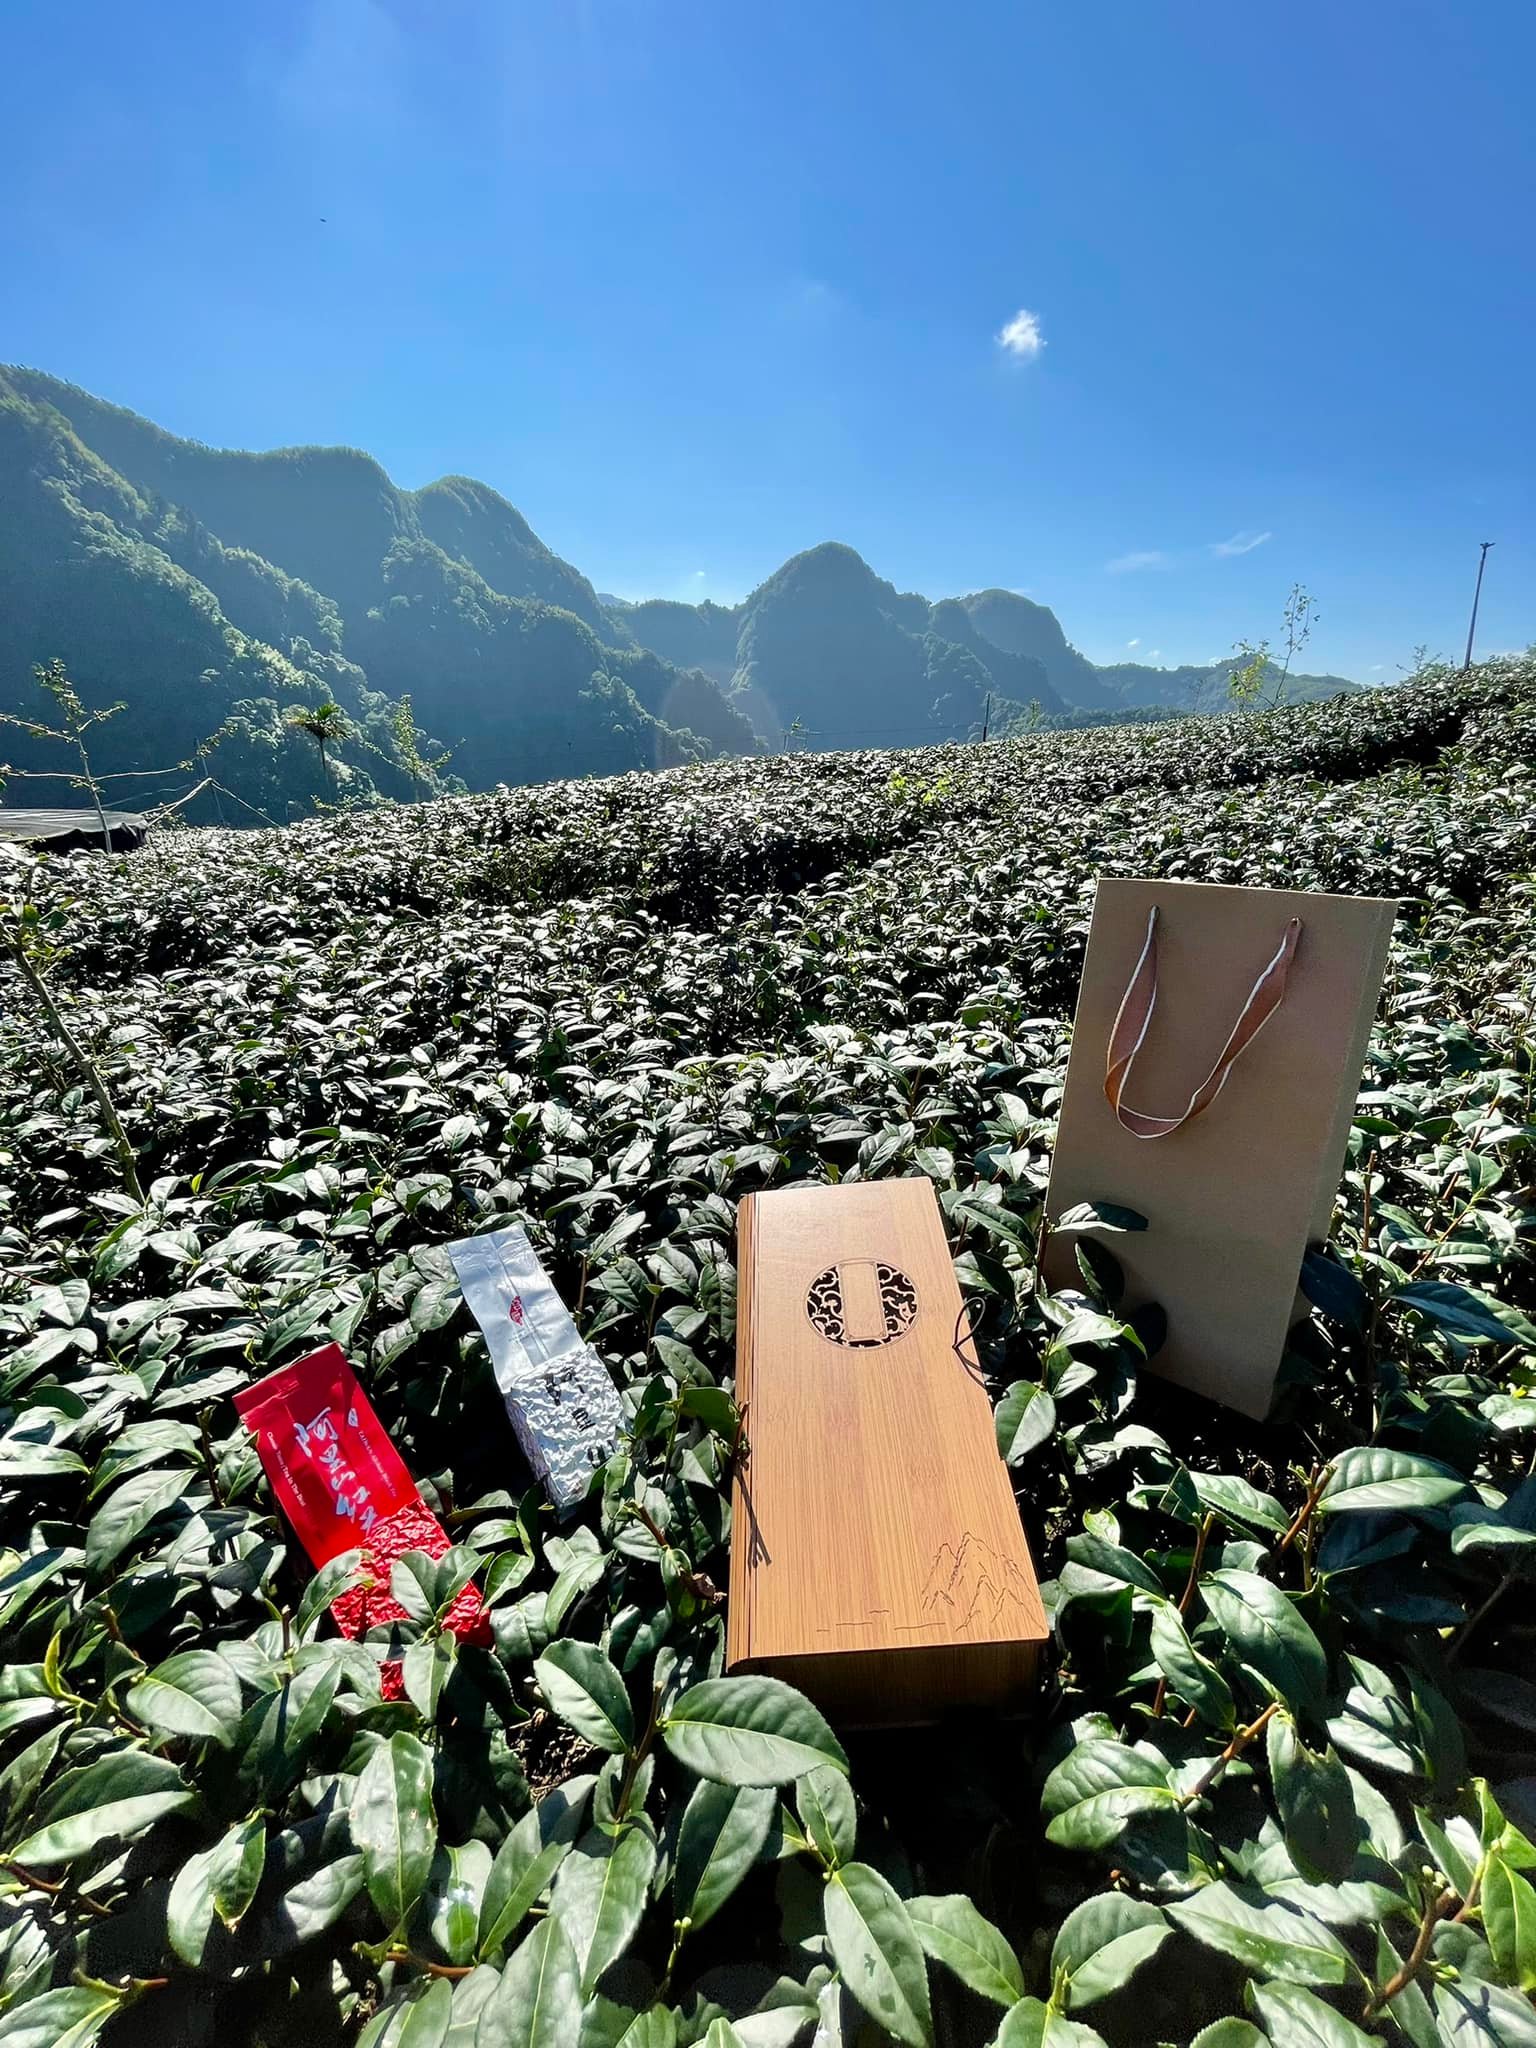 高山茶的檢驗中，最常被檢測的項目包含「農藥殘留」以及「重金屬含量」。